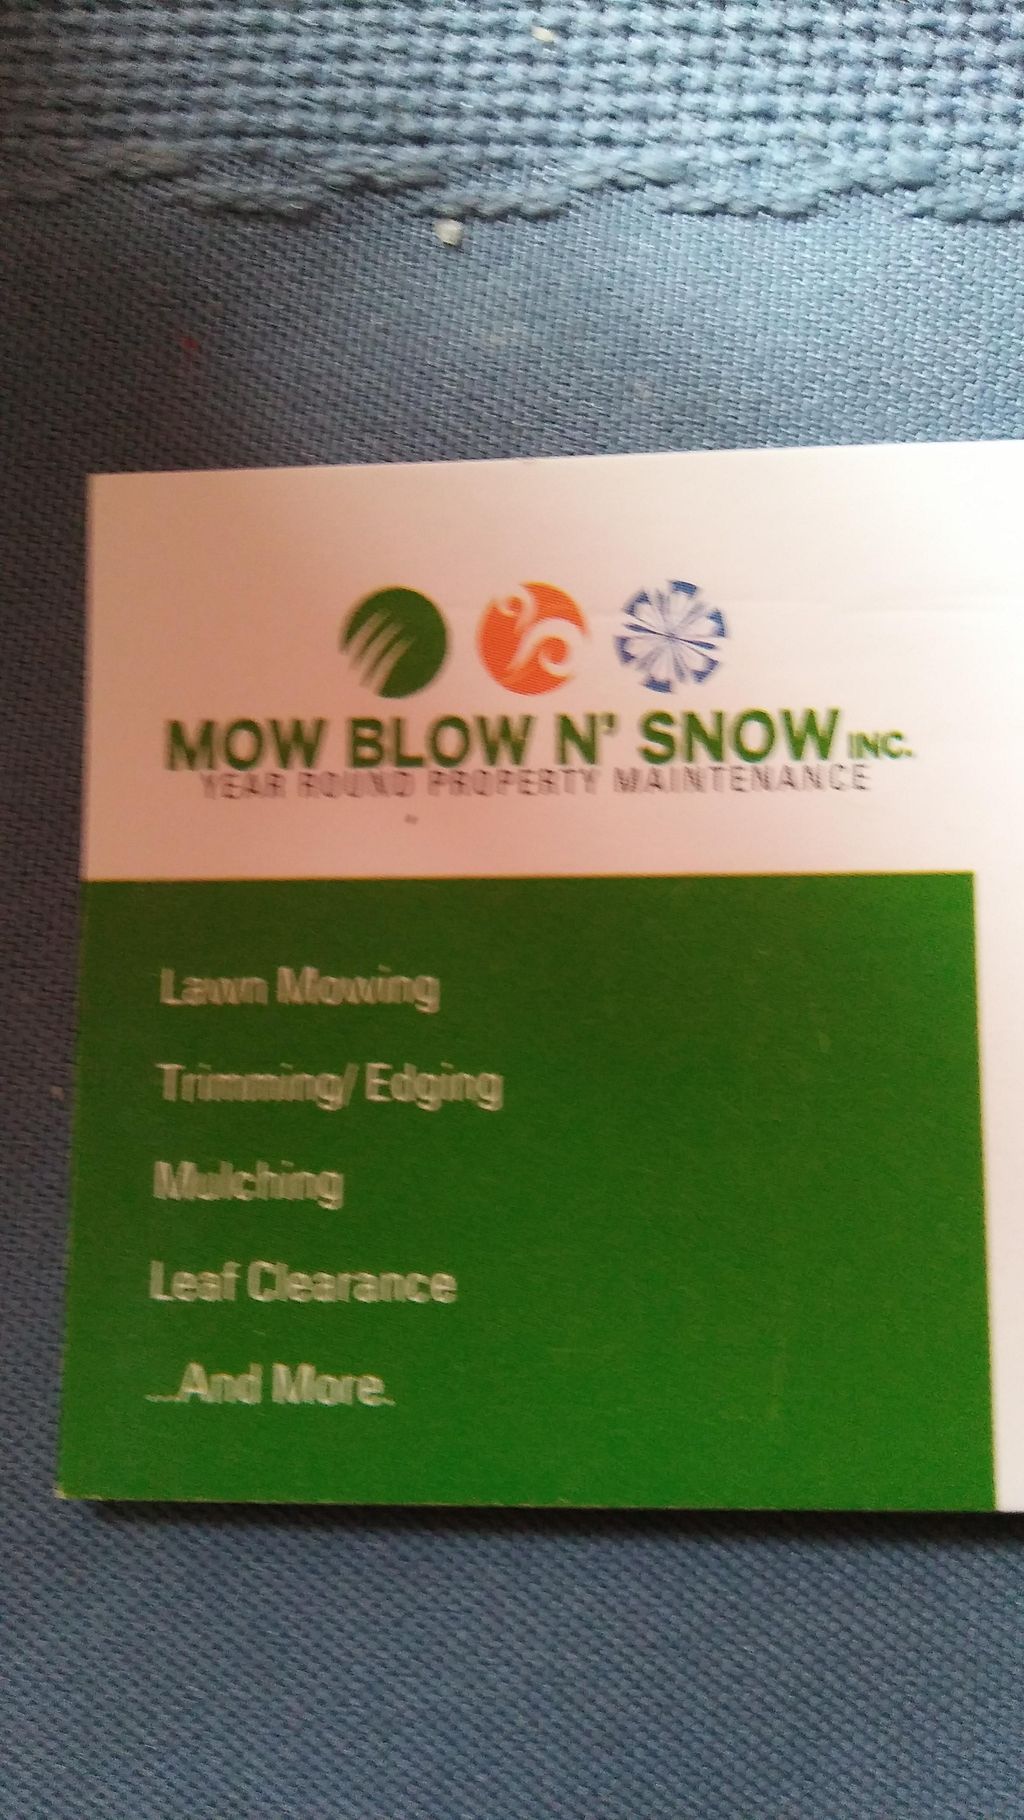 Mow Blow n Snow